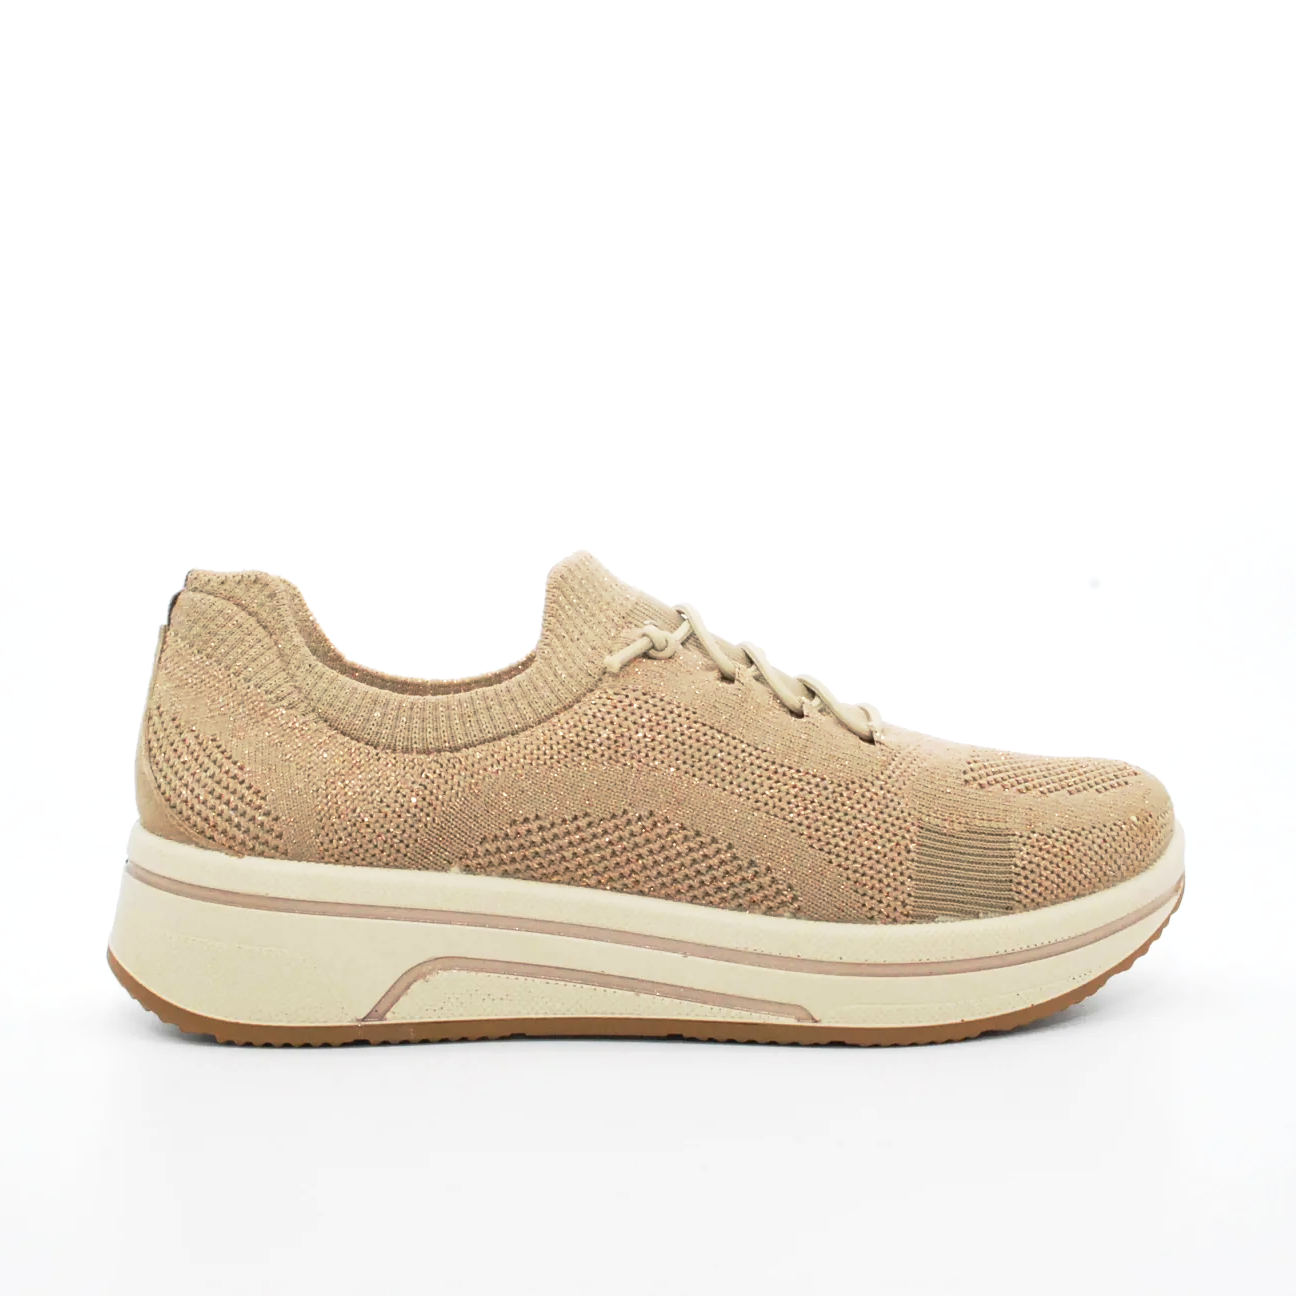 sneakers-slip-on-ara-in-tessuto-35-beige-tessuto-tecnico-comfort.png